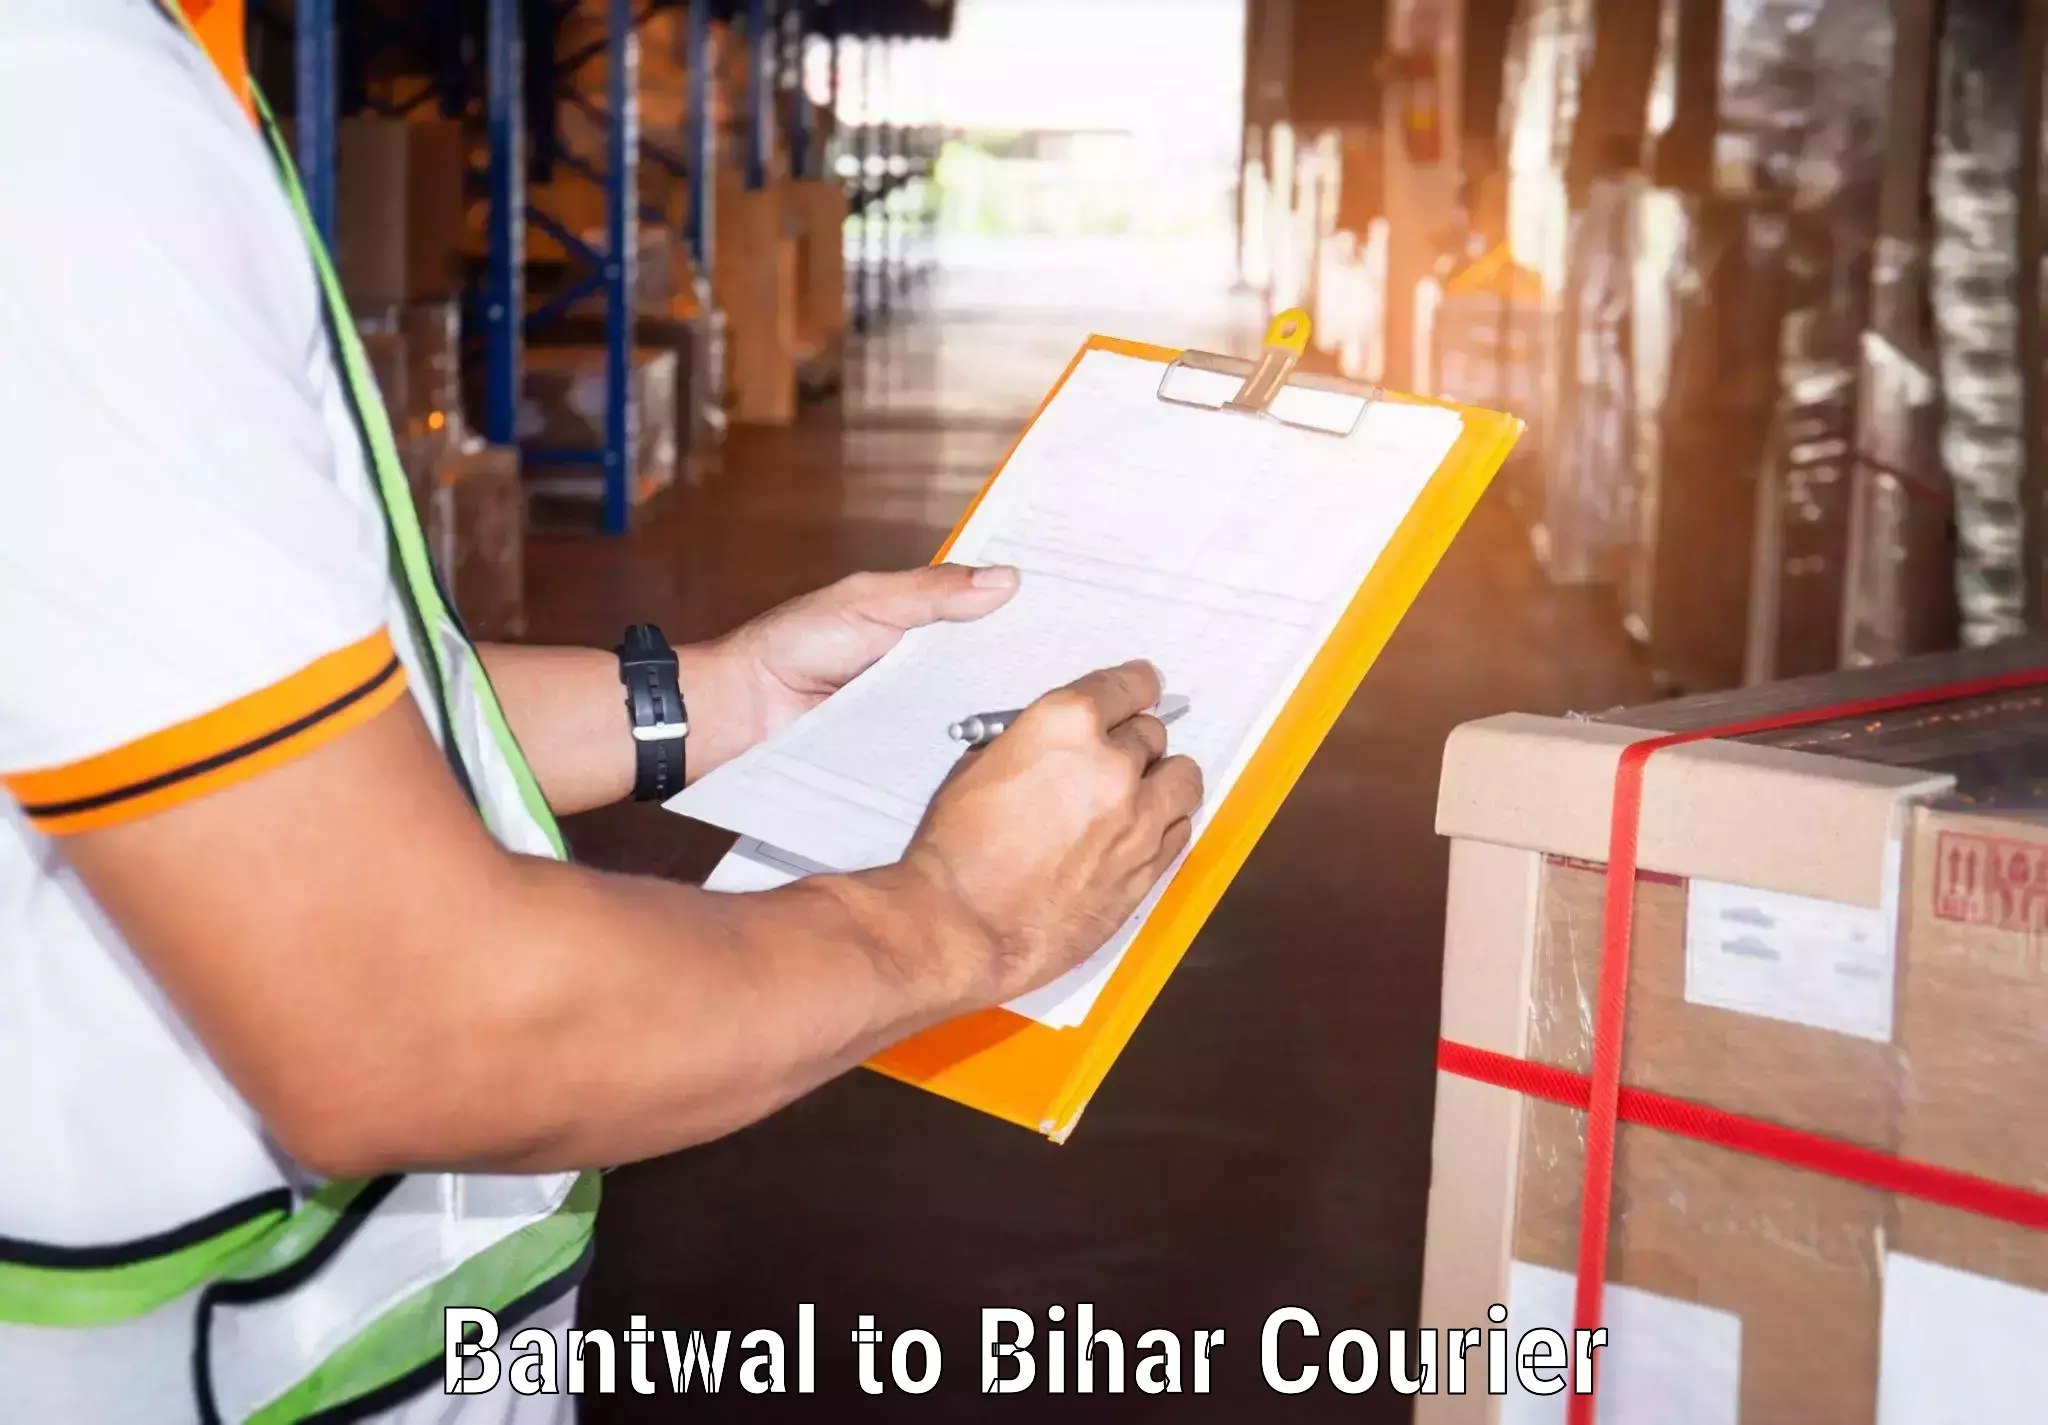 Door-to-door freight service Bantwal to Bihar